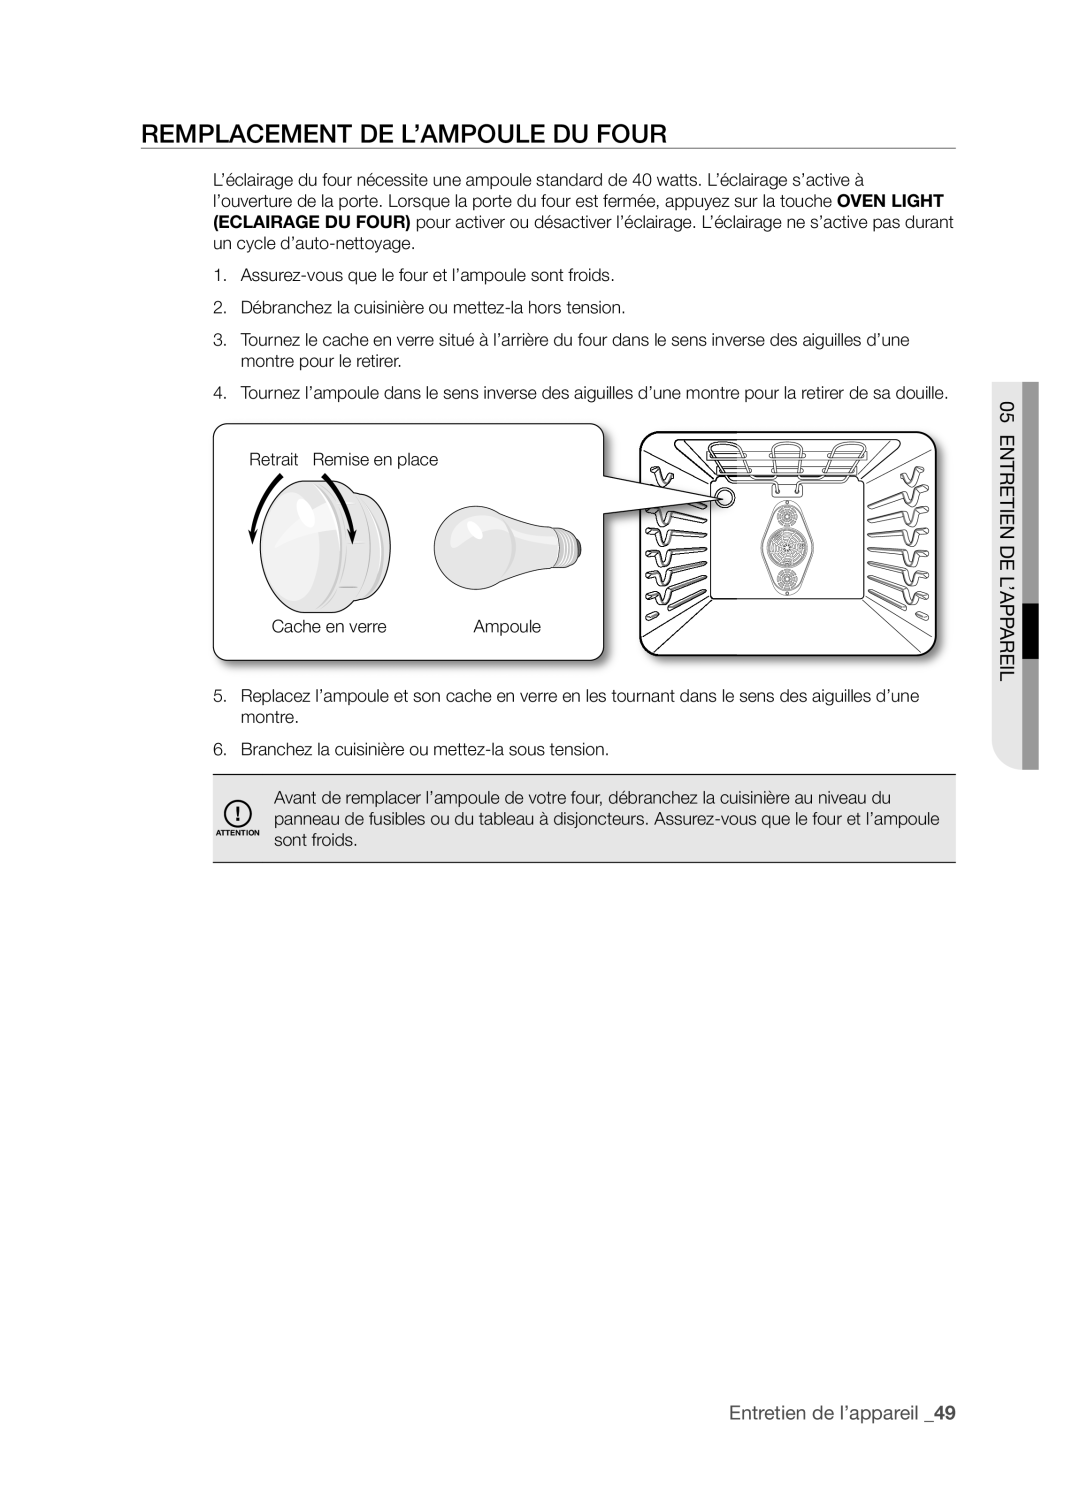 Samsung FTQ352IWX user manual Remplacement De L’Ampoule Du Four, Entretien De L’Appareil, Entretien de l’appareil _9 